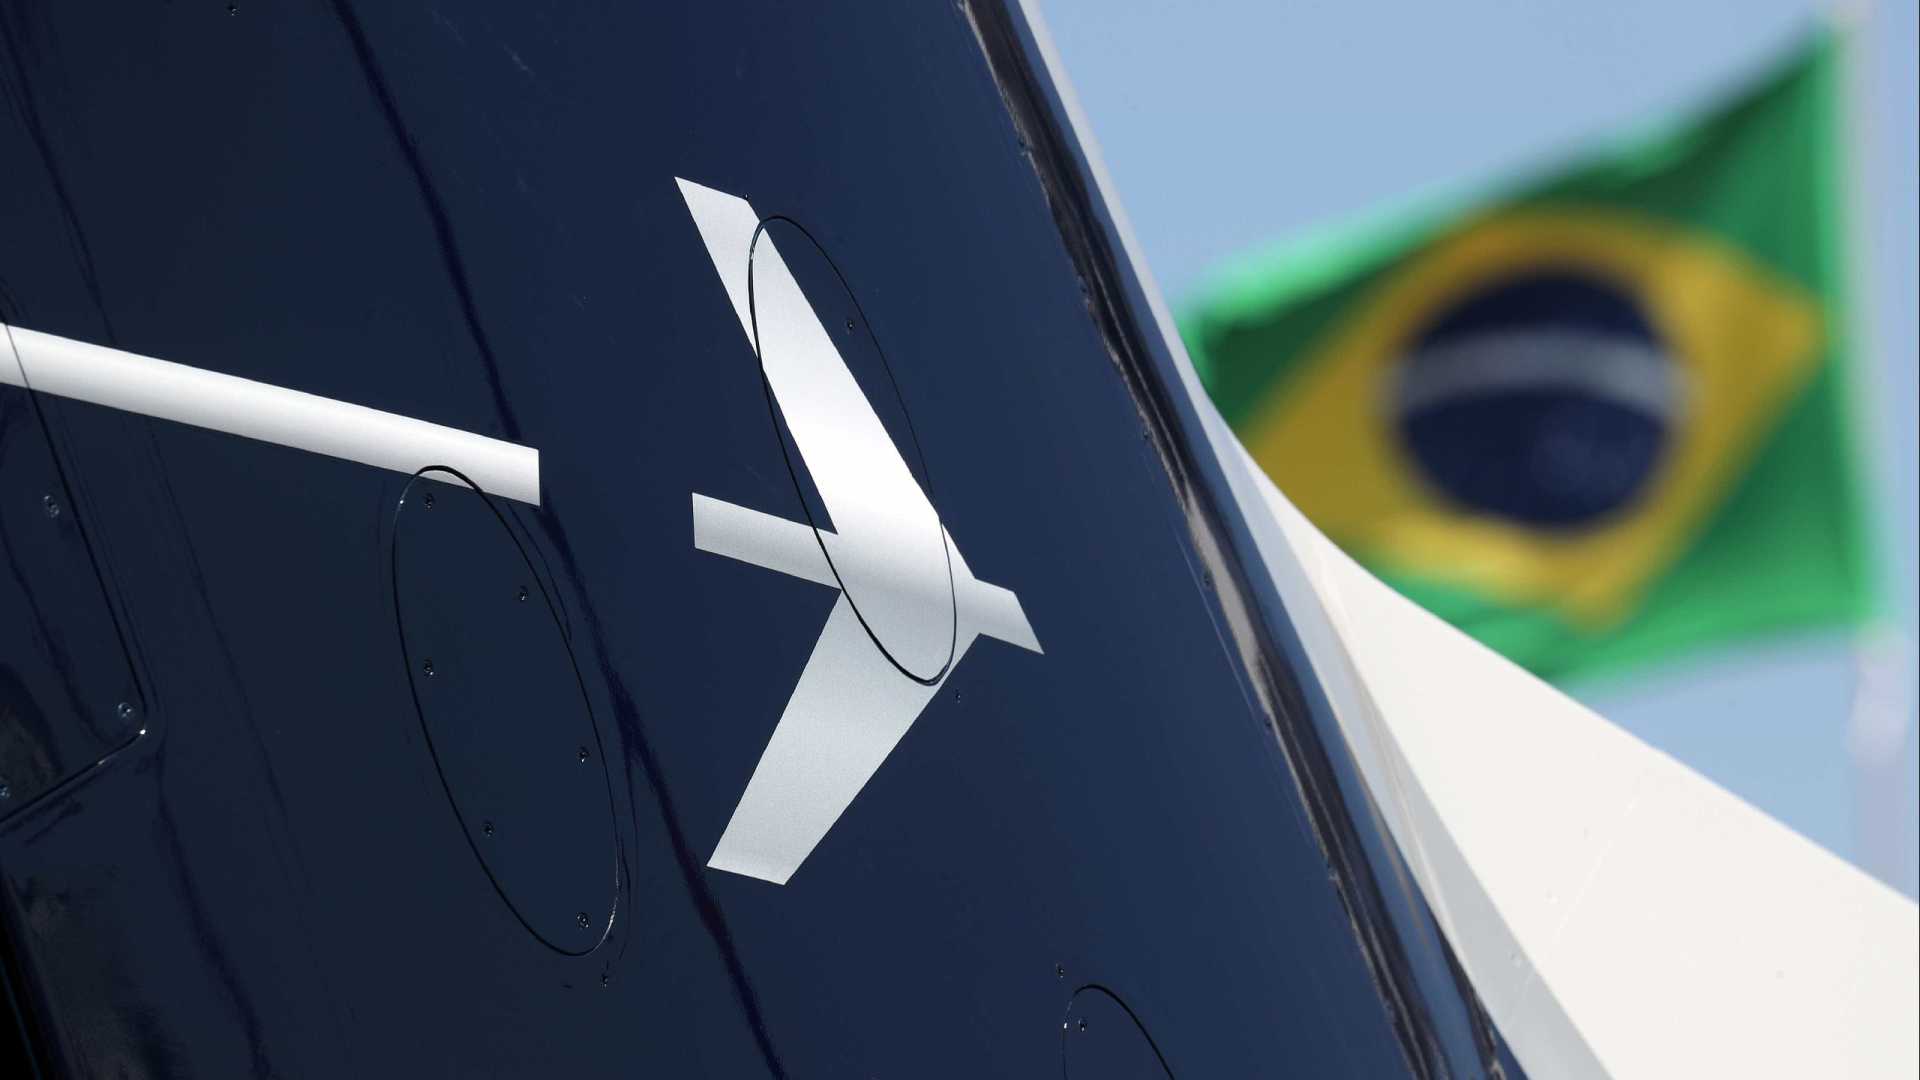 Mourão propõe aval de Temer e Bolsonaro a acordo de Embraer e Boeing